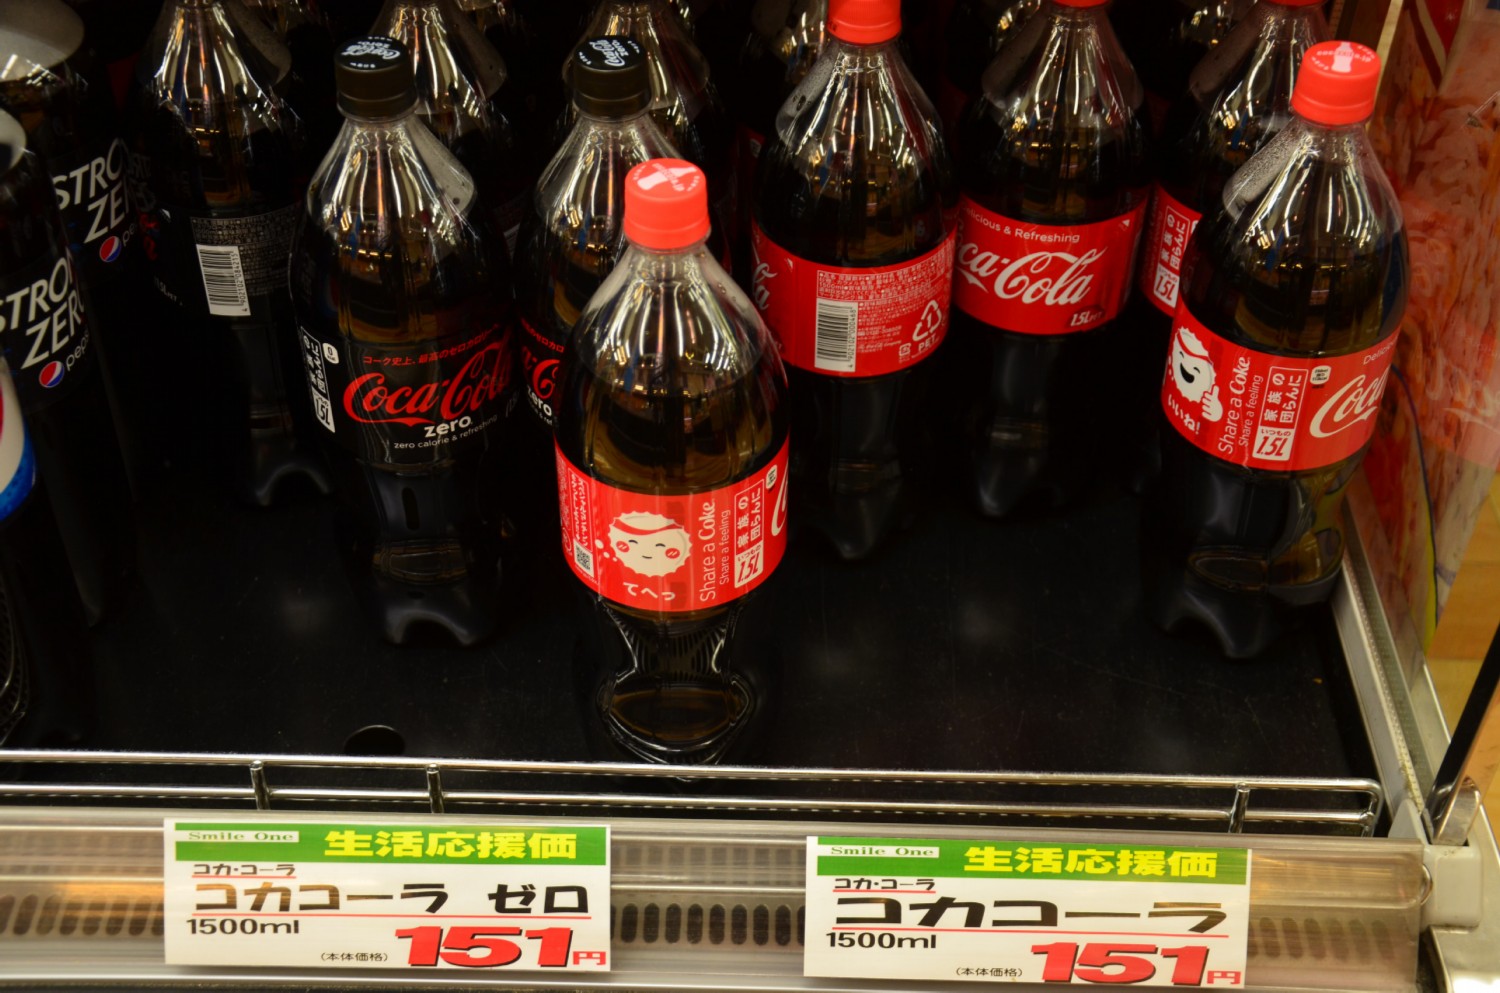 1.5 literes Cola 1.3 euro